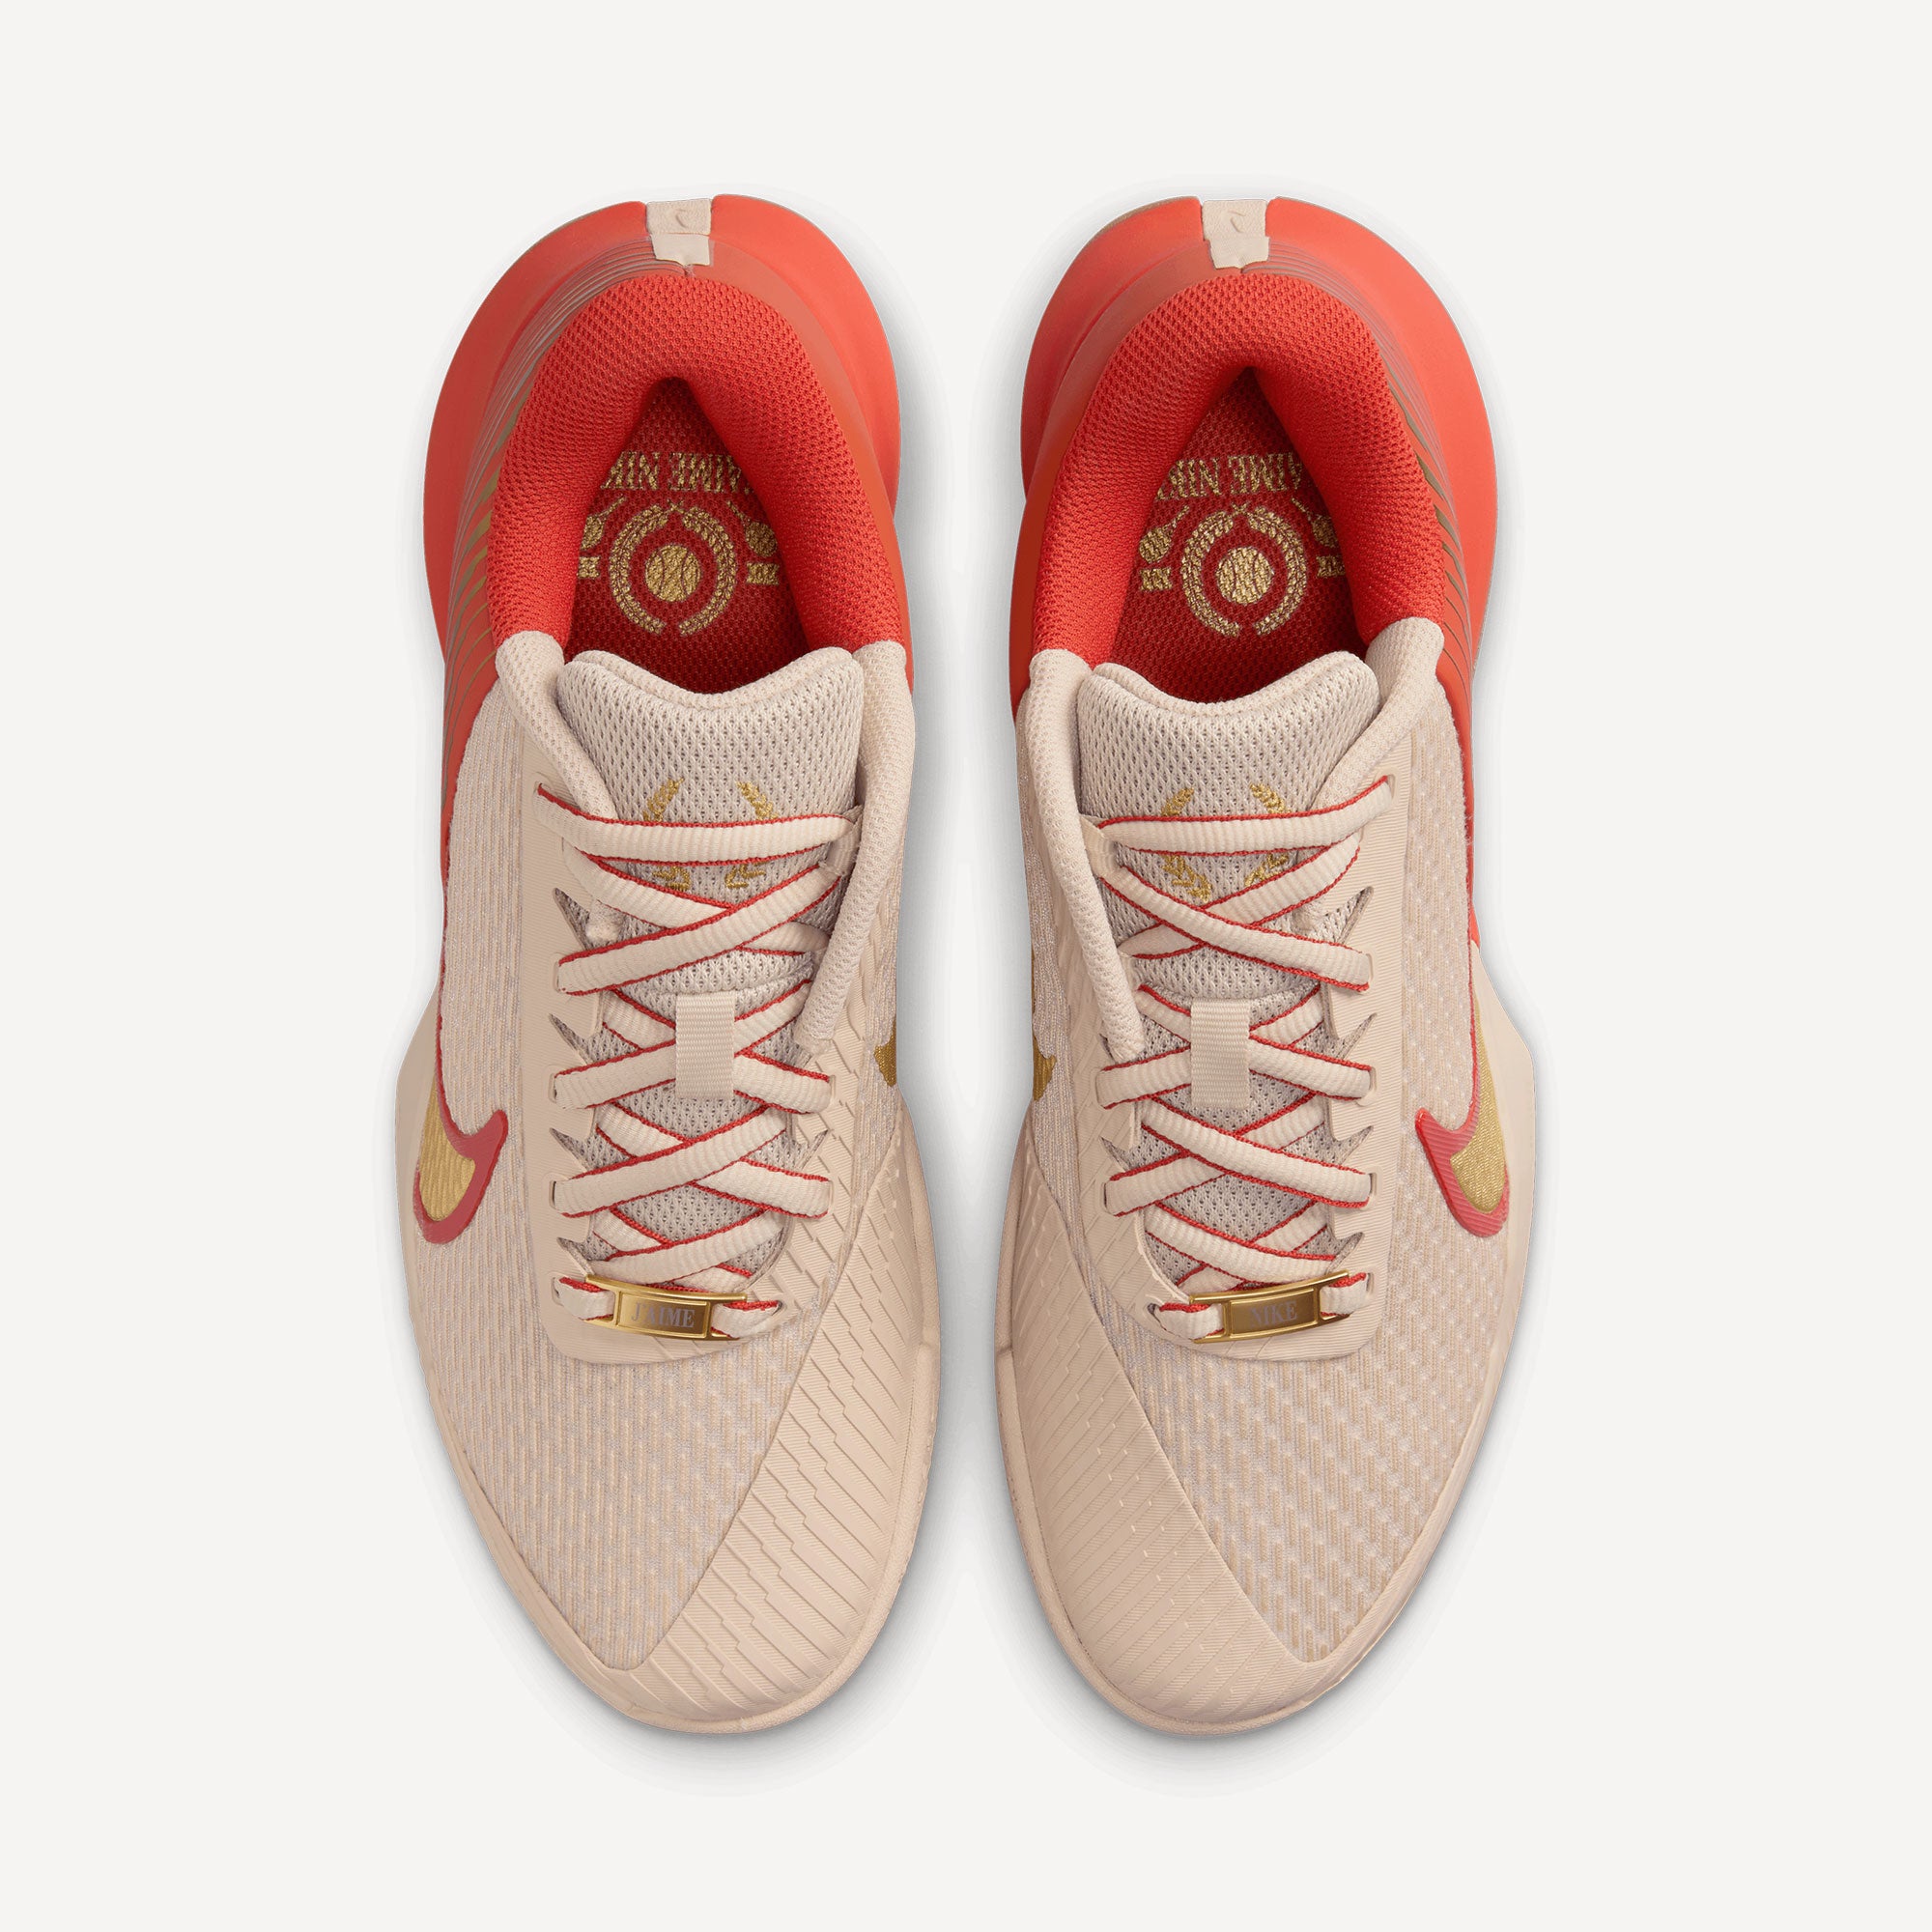 NikeCourt Air Zoom Vapor Pro 2 Premium Women's Clay Court Tennis Shoes - Sand (6)